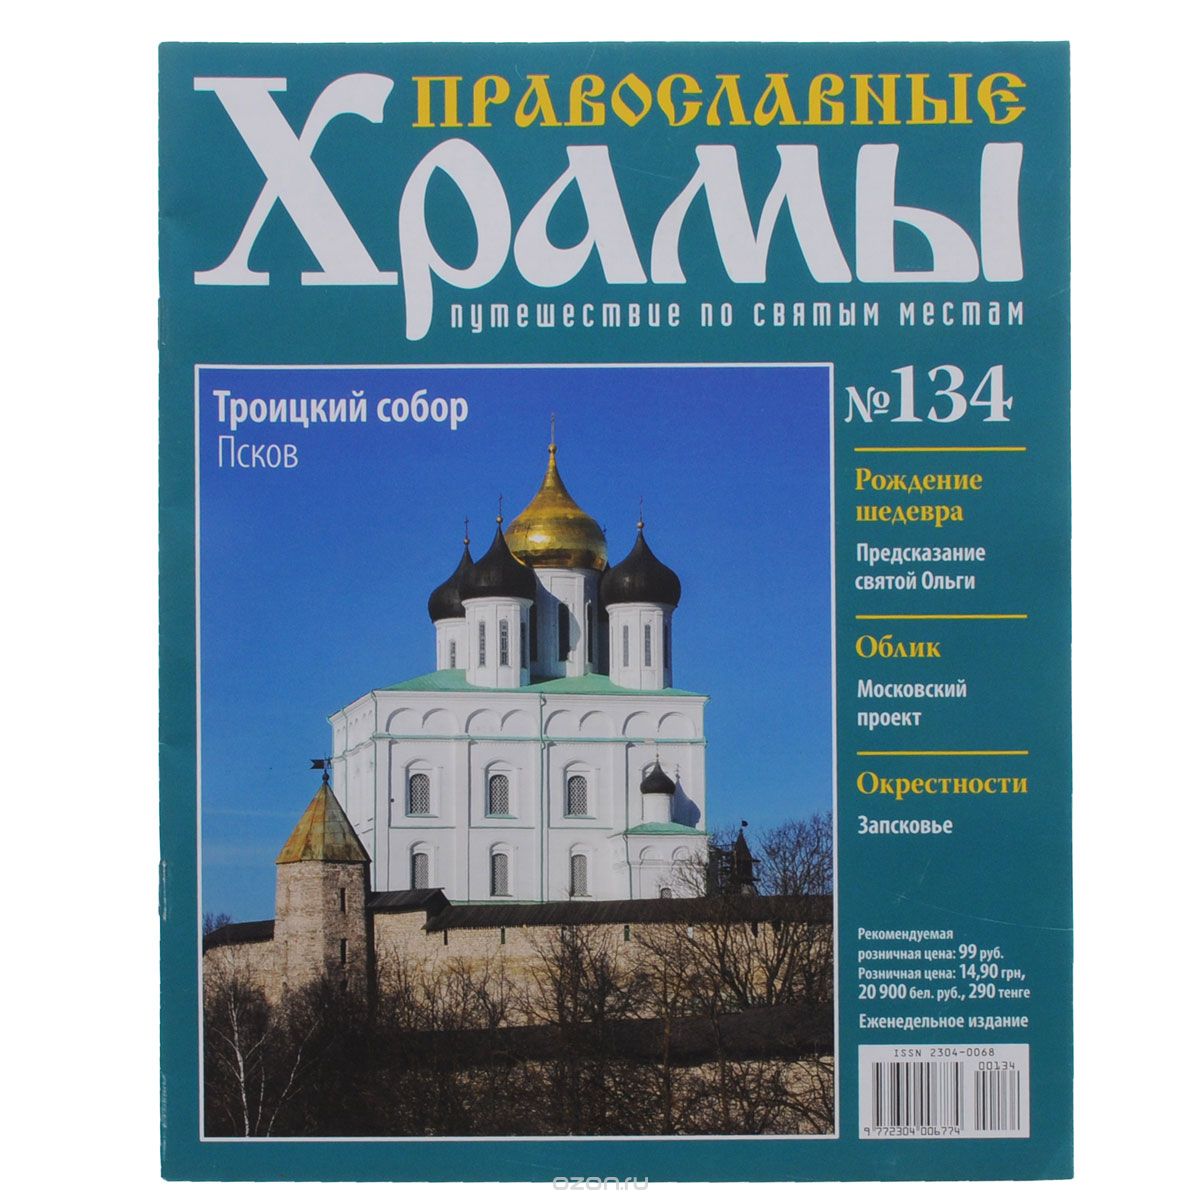 Журнал "Православные храмы. Путешествие по святым местам" № 134